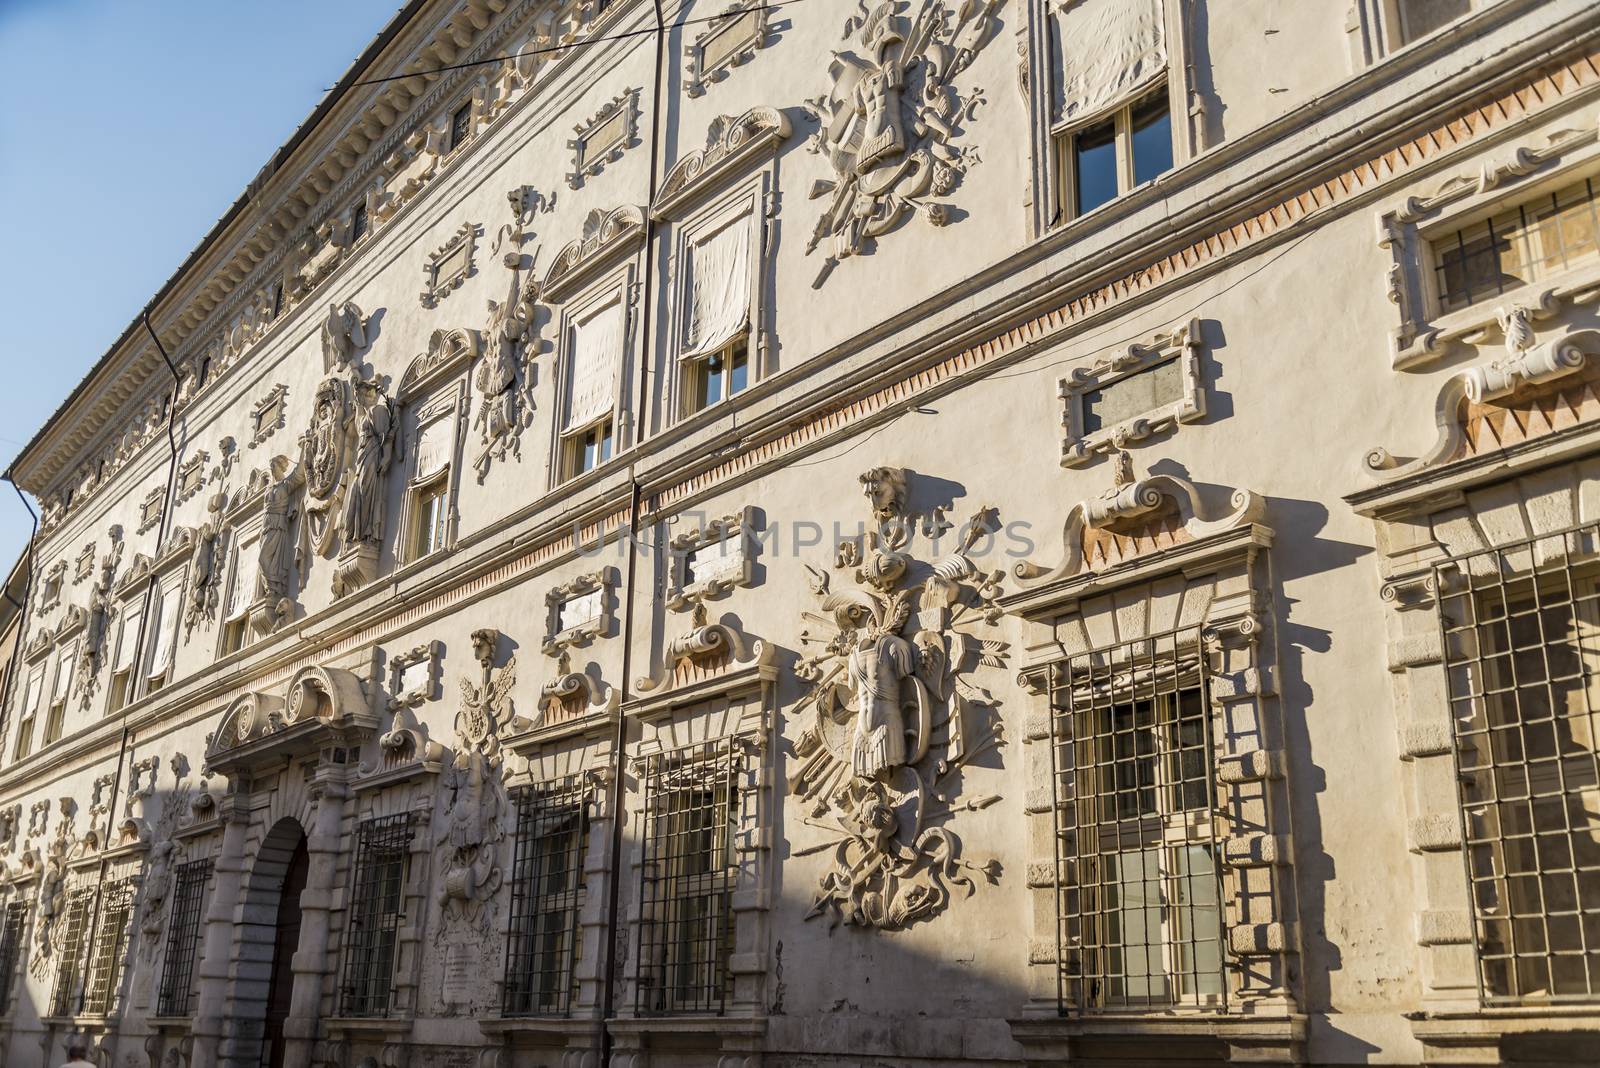 Palazzo Bentivoglio in Ferrara, Italy. by edella